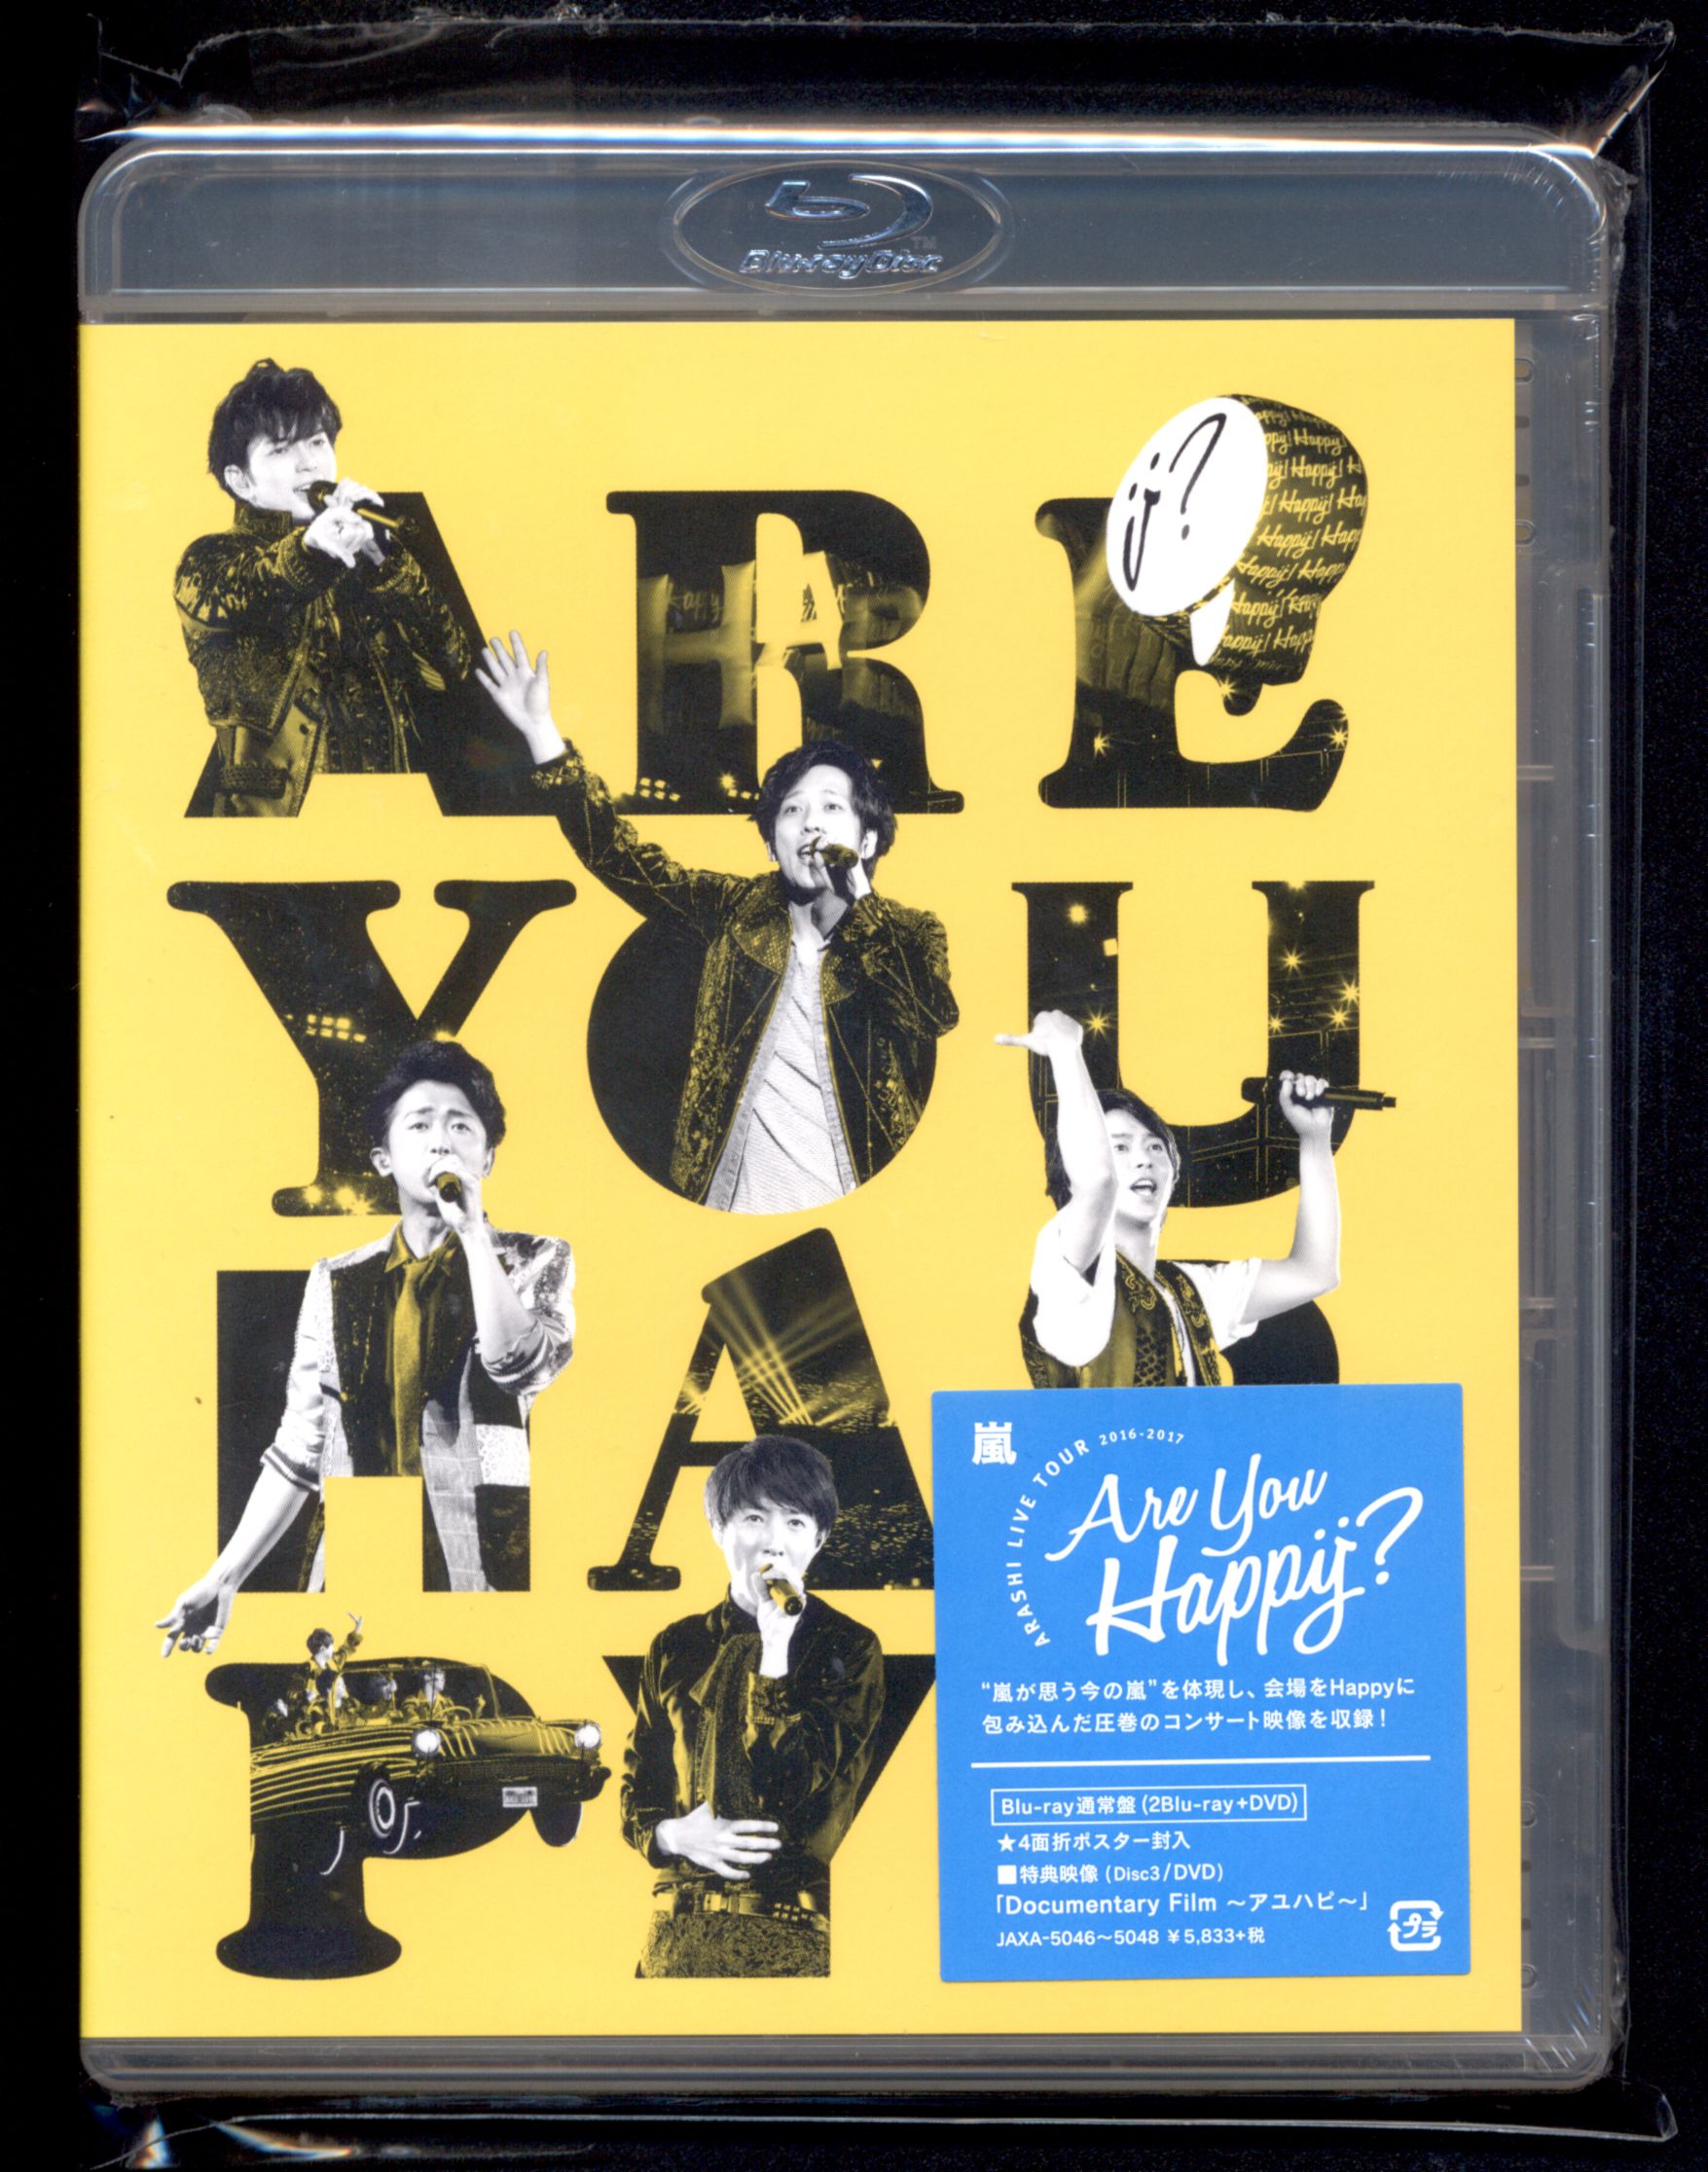 嵐 Arashi Live Tour 16 17 Are You Happy Blu Ray通常盤 3bd Documentary Film アユハピ 収録 4面折ポスター封入 未開封 まんだらけ Mandarake